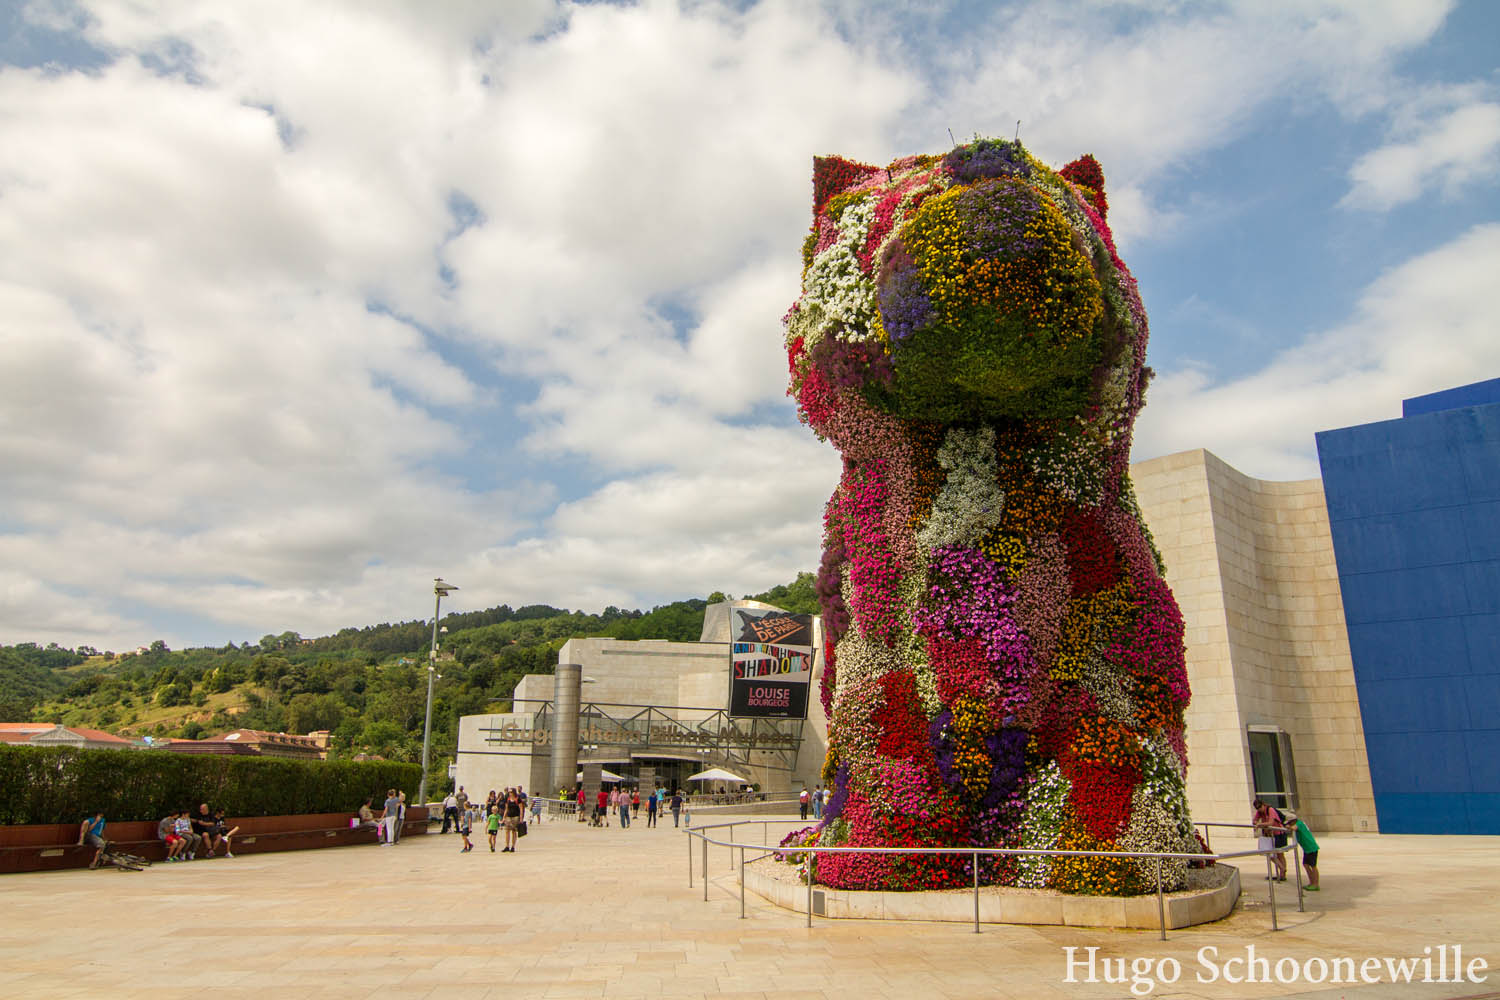 Kunstwerk in de vorm van een grote hond van bloemen: Puppy van Jeff Koon voor het Guggenheim Museum in Bilbao